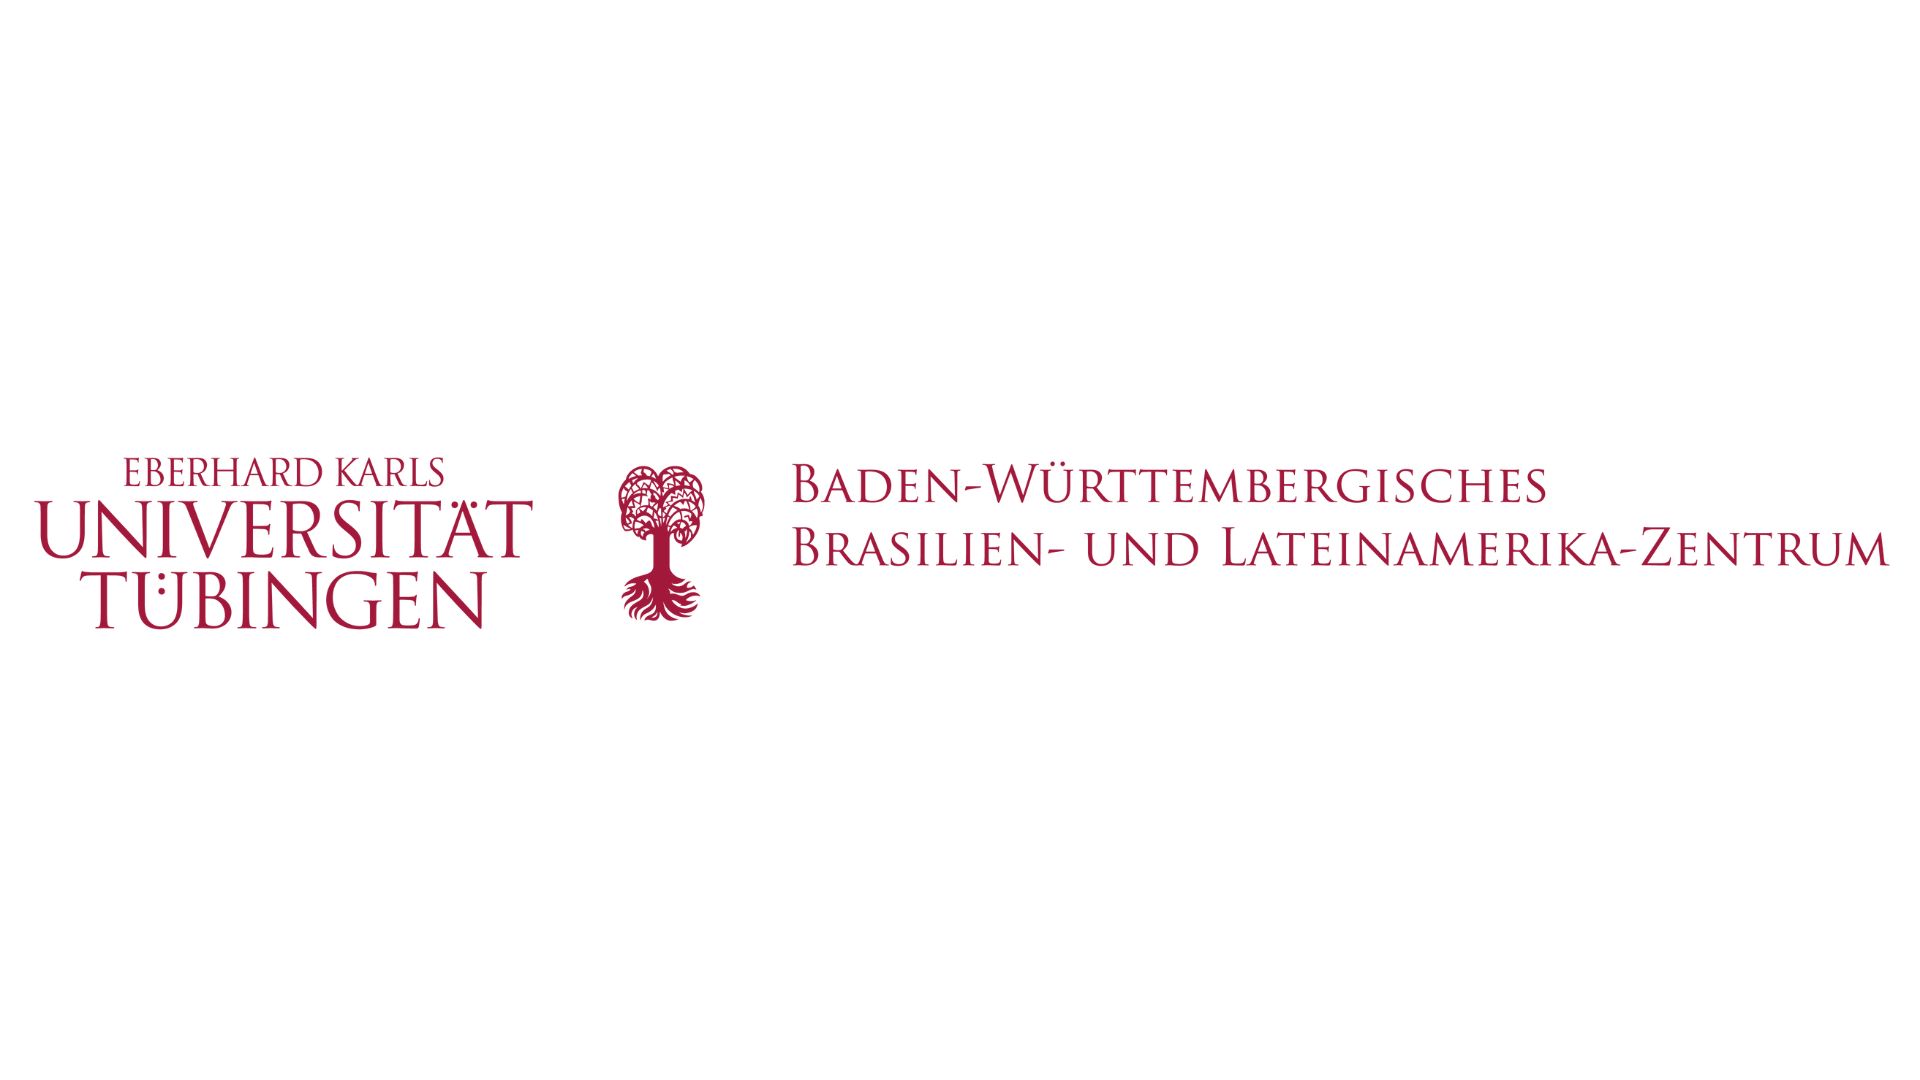 Baden-Württembergisches Brasilien- und Lateinamerika-Zentrum der Universität Tübingen